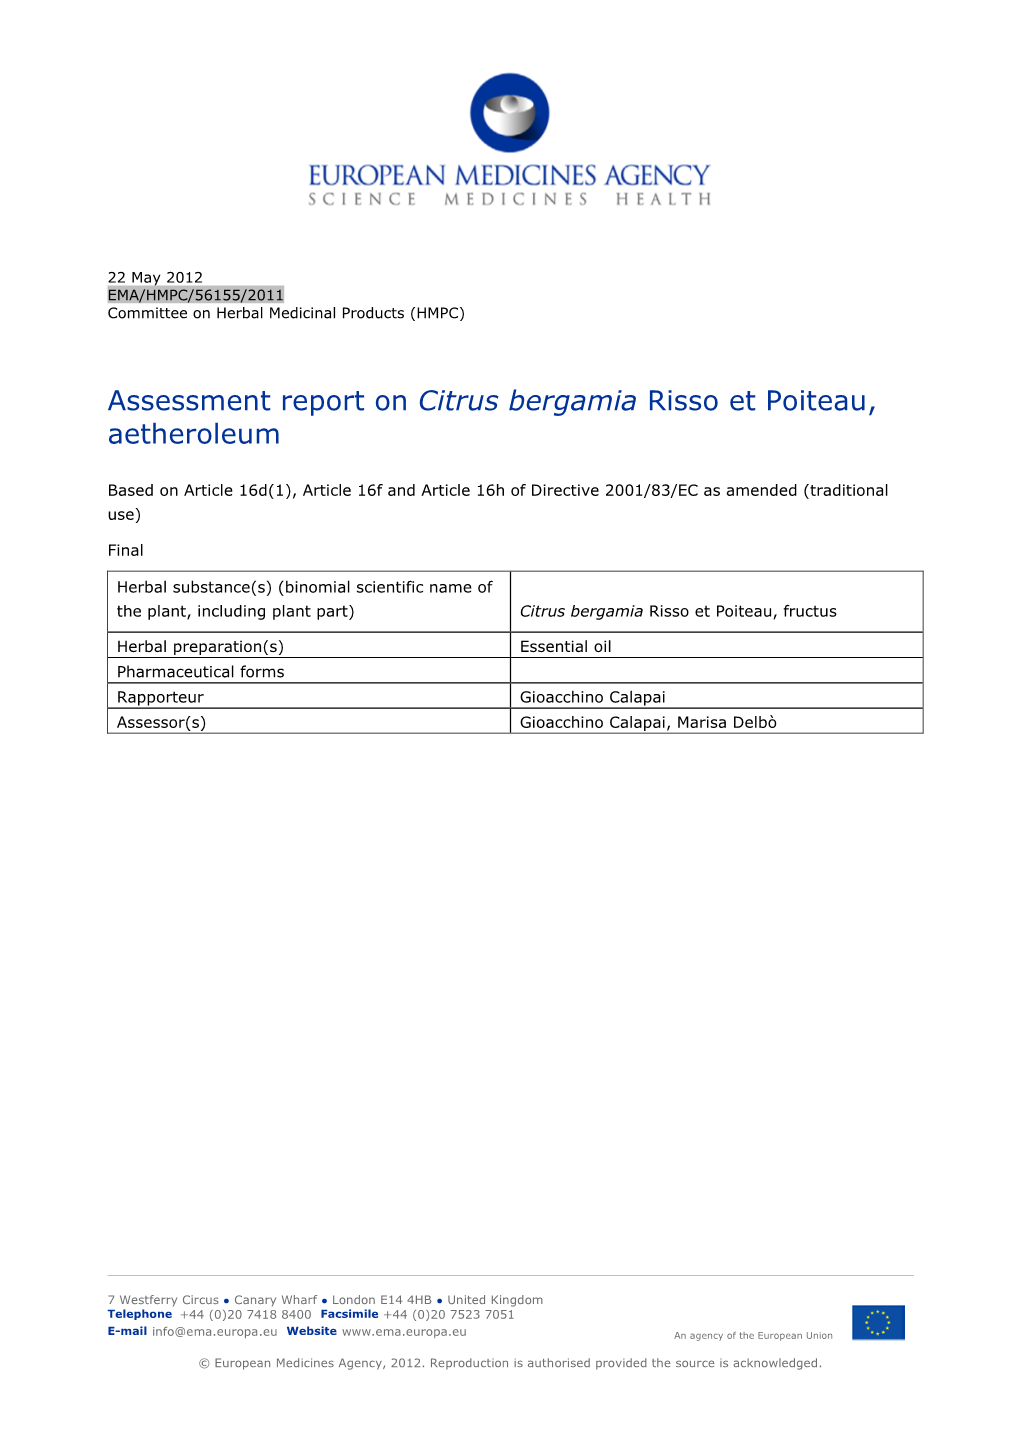 Assessment Report on Citrus Bergamia Risso Et Poiteau, Aetheroleum